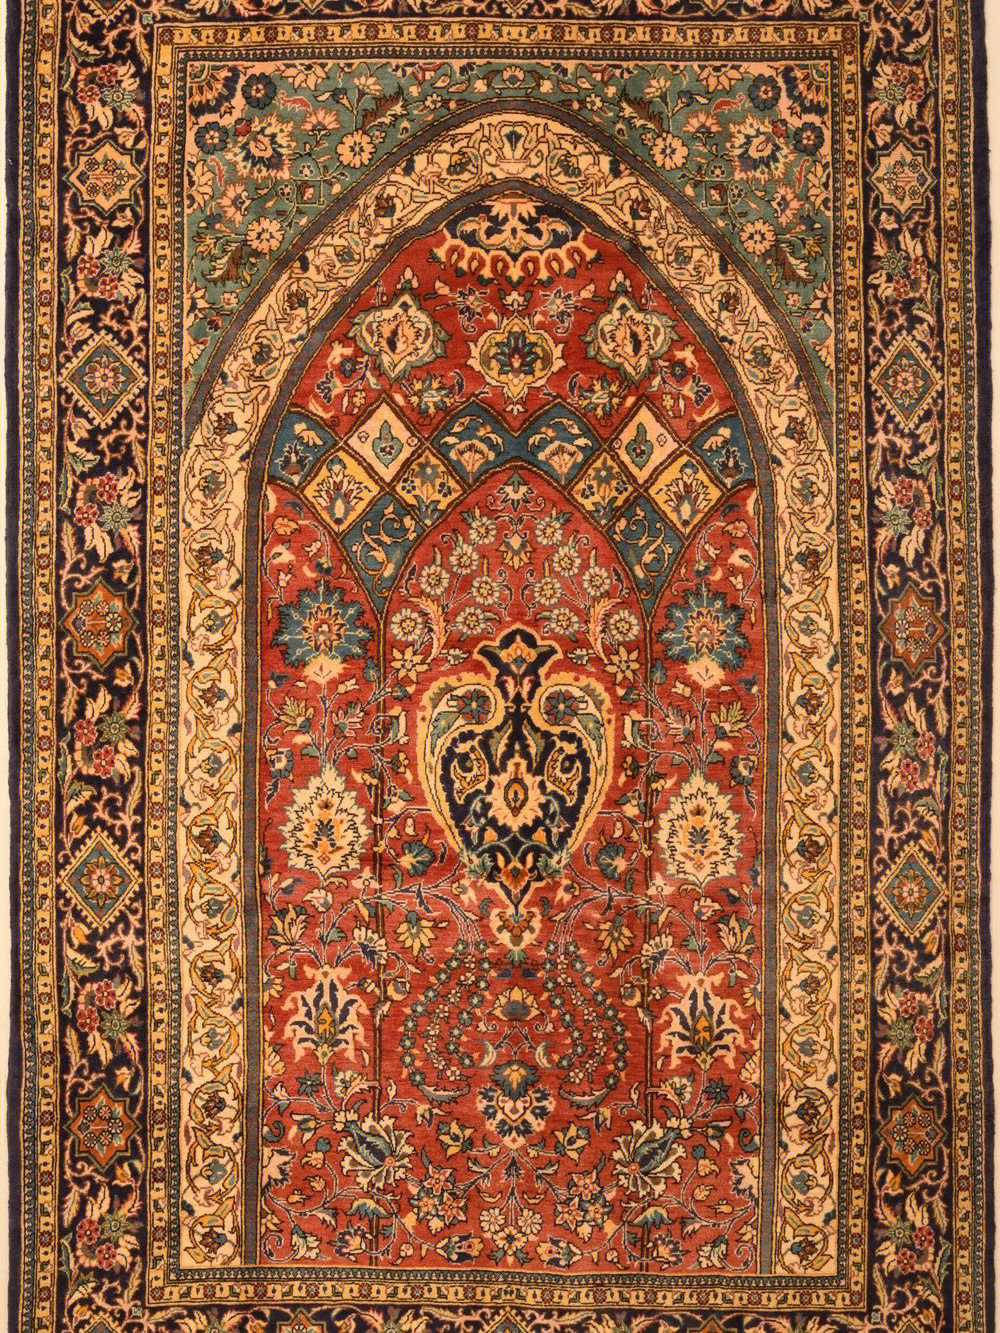 这些地毯的来源不仅在波斯还有很多中东国家有自己风格的地毯设计